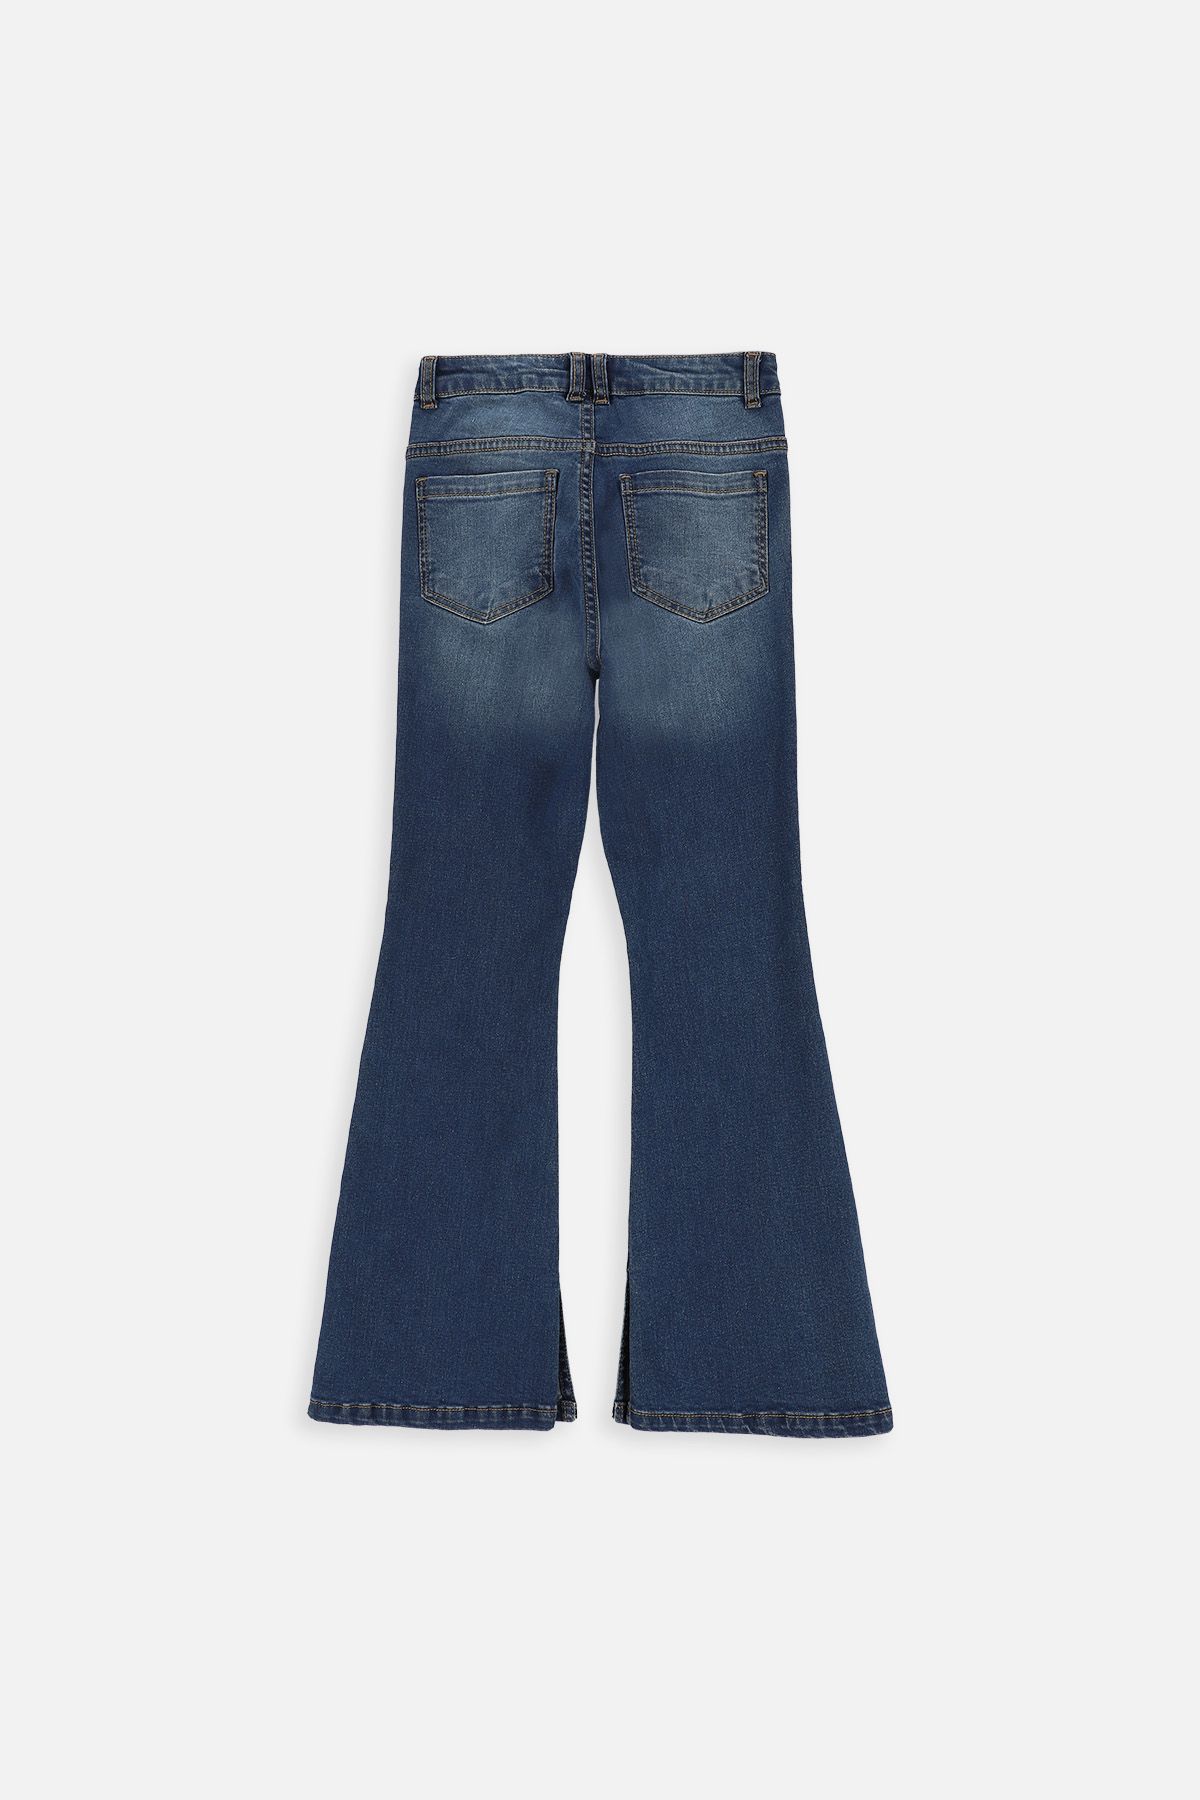 Spodnie jeansowe granatowe z rozszerzaną nogawką, FLARE LEG 2220126